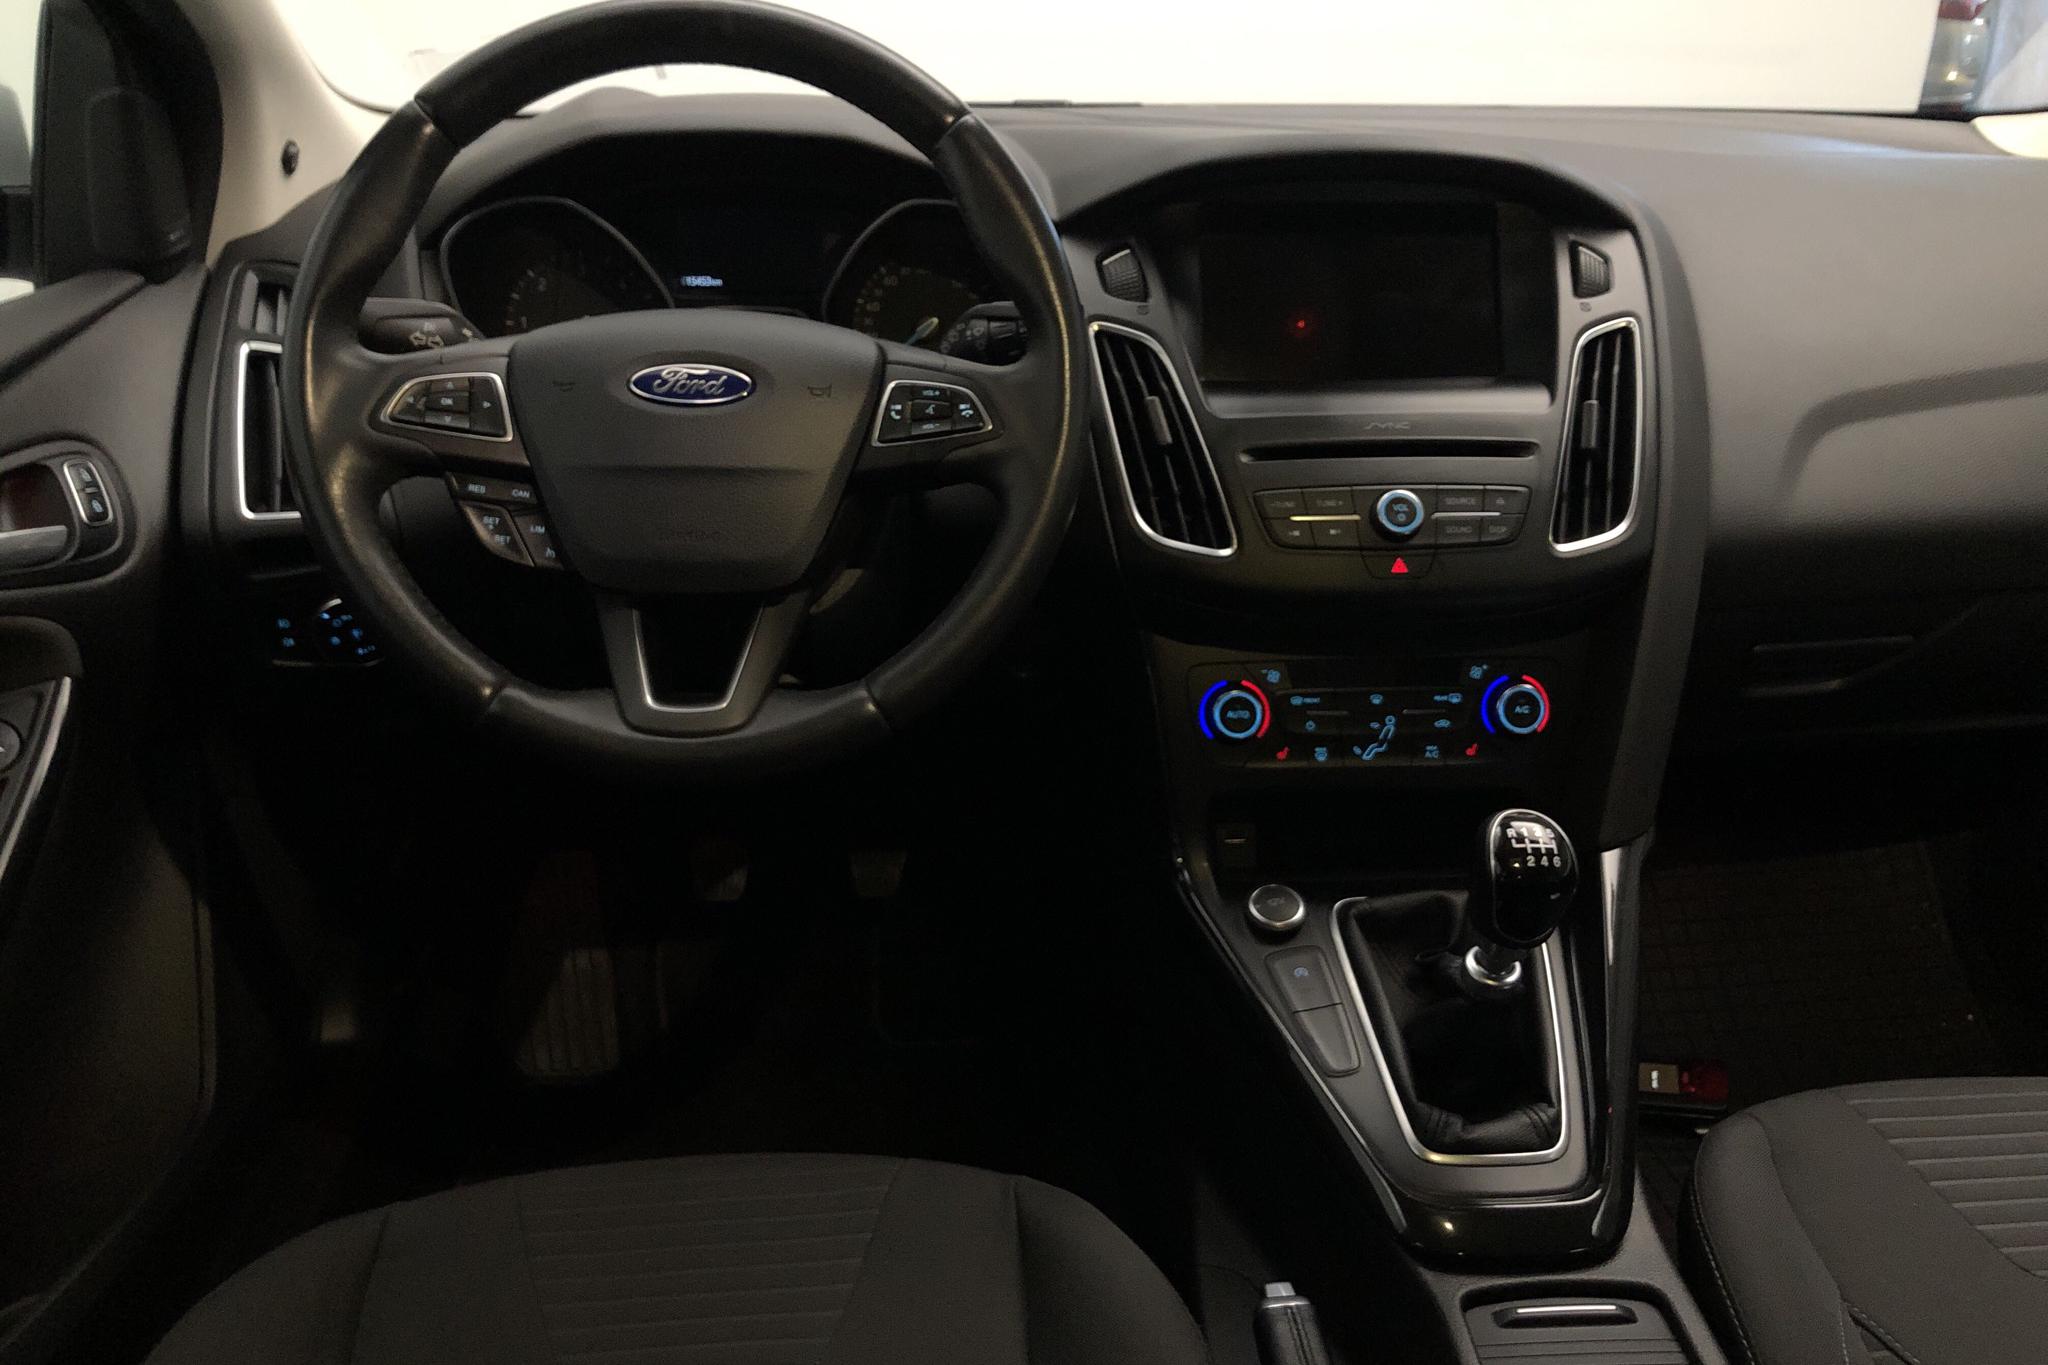 Ford Focus 1.5 TDCi Kombi (95hk) - 15 450 km - Manual - gray - 2018